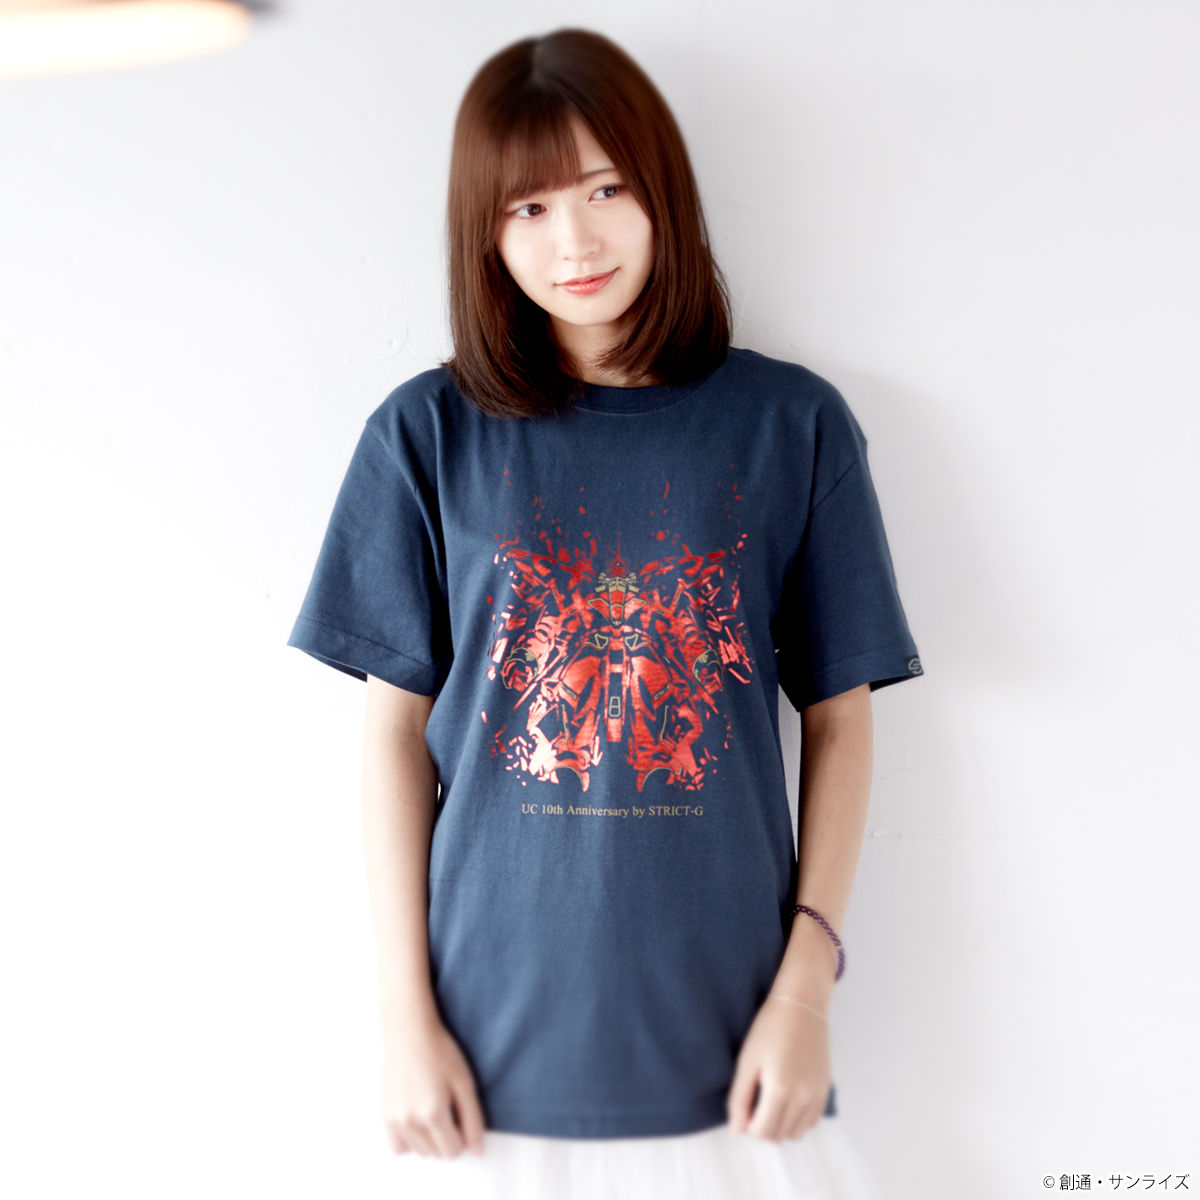 STRICT-G ガンダムユニコーン 10周年 アニバーサリー Tシャツ UC